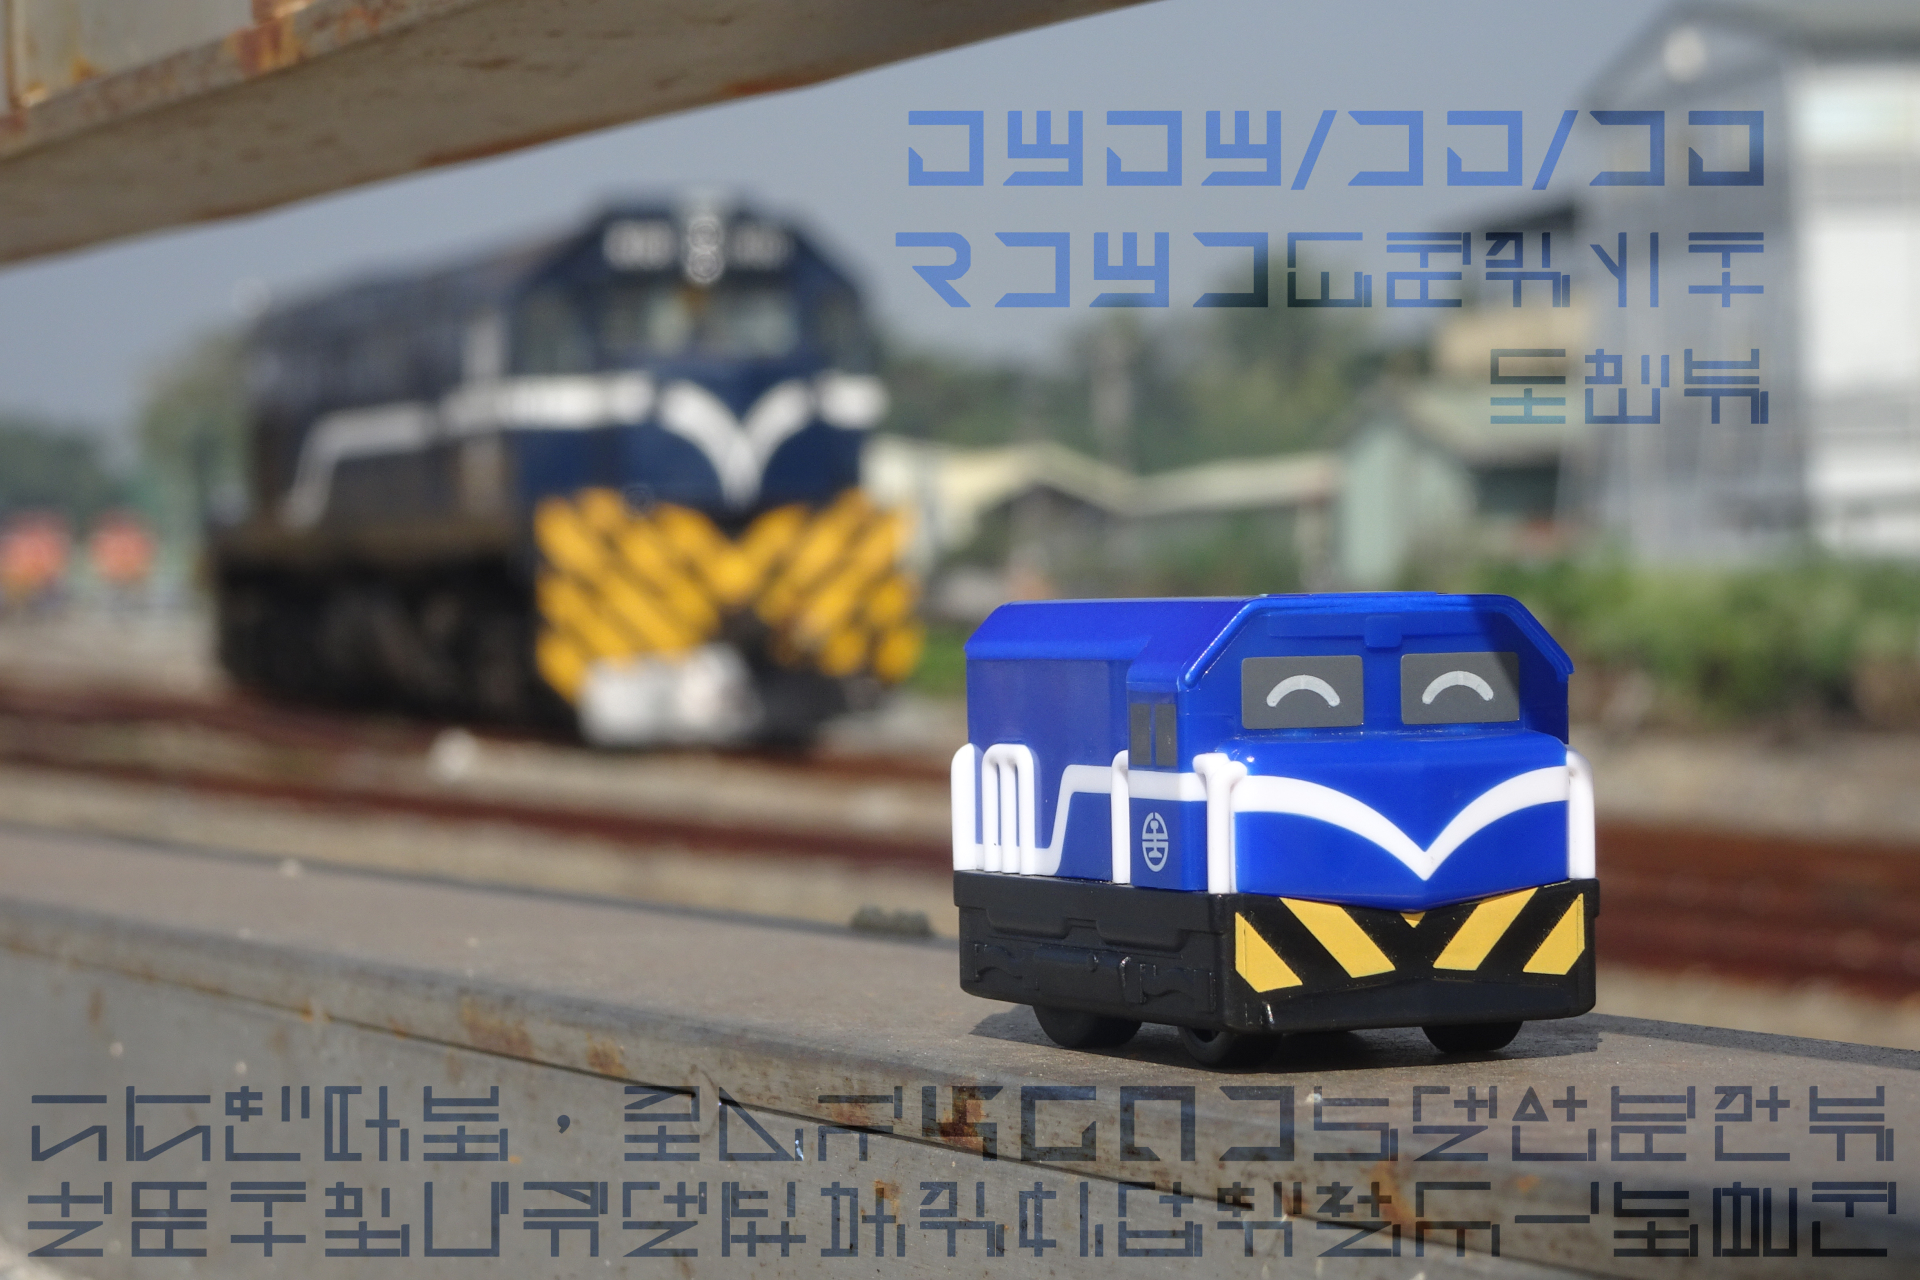 這張圖可能包含一台火車模型